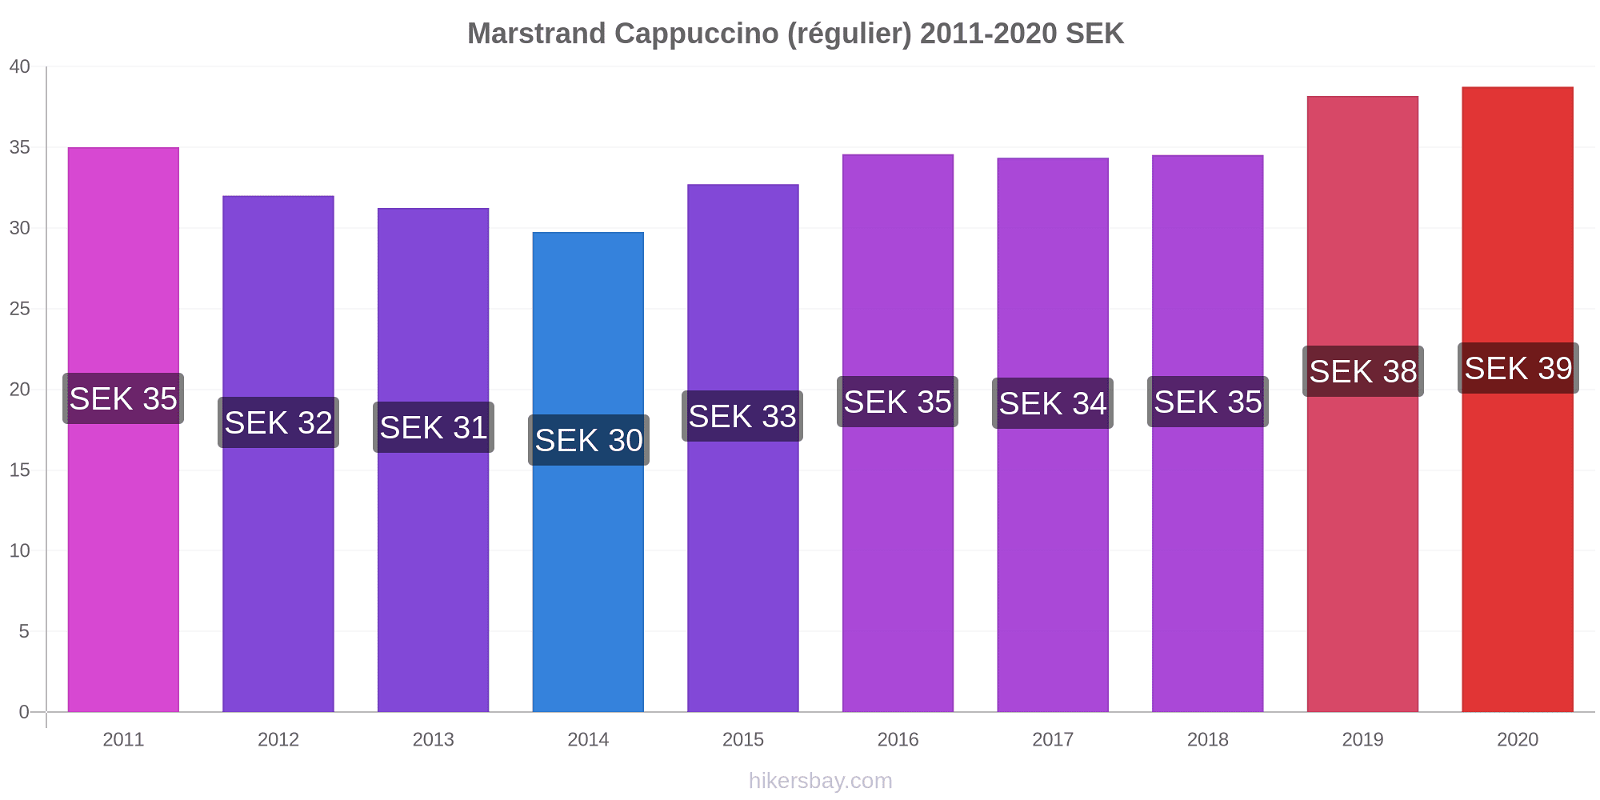 Marstrand changements de prix Cappuccino (régulier) hikersbay.com